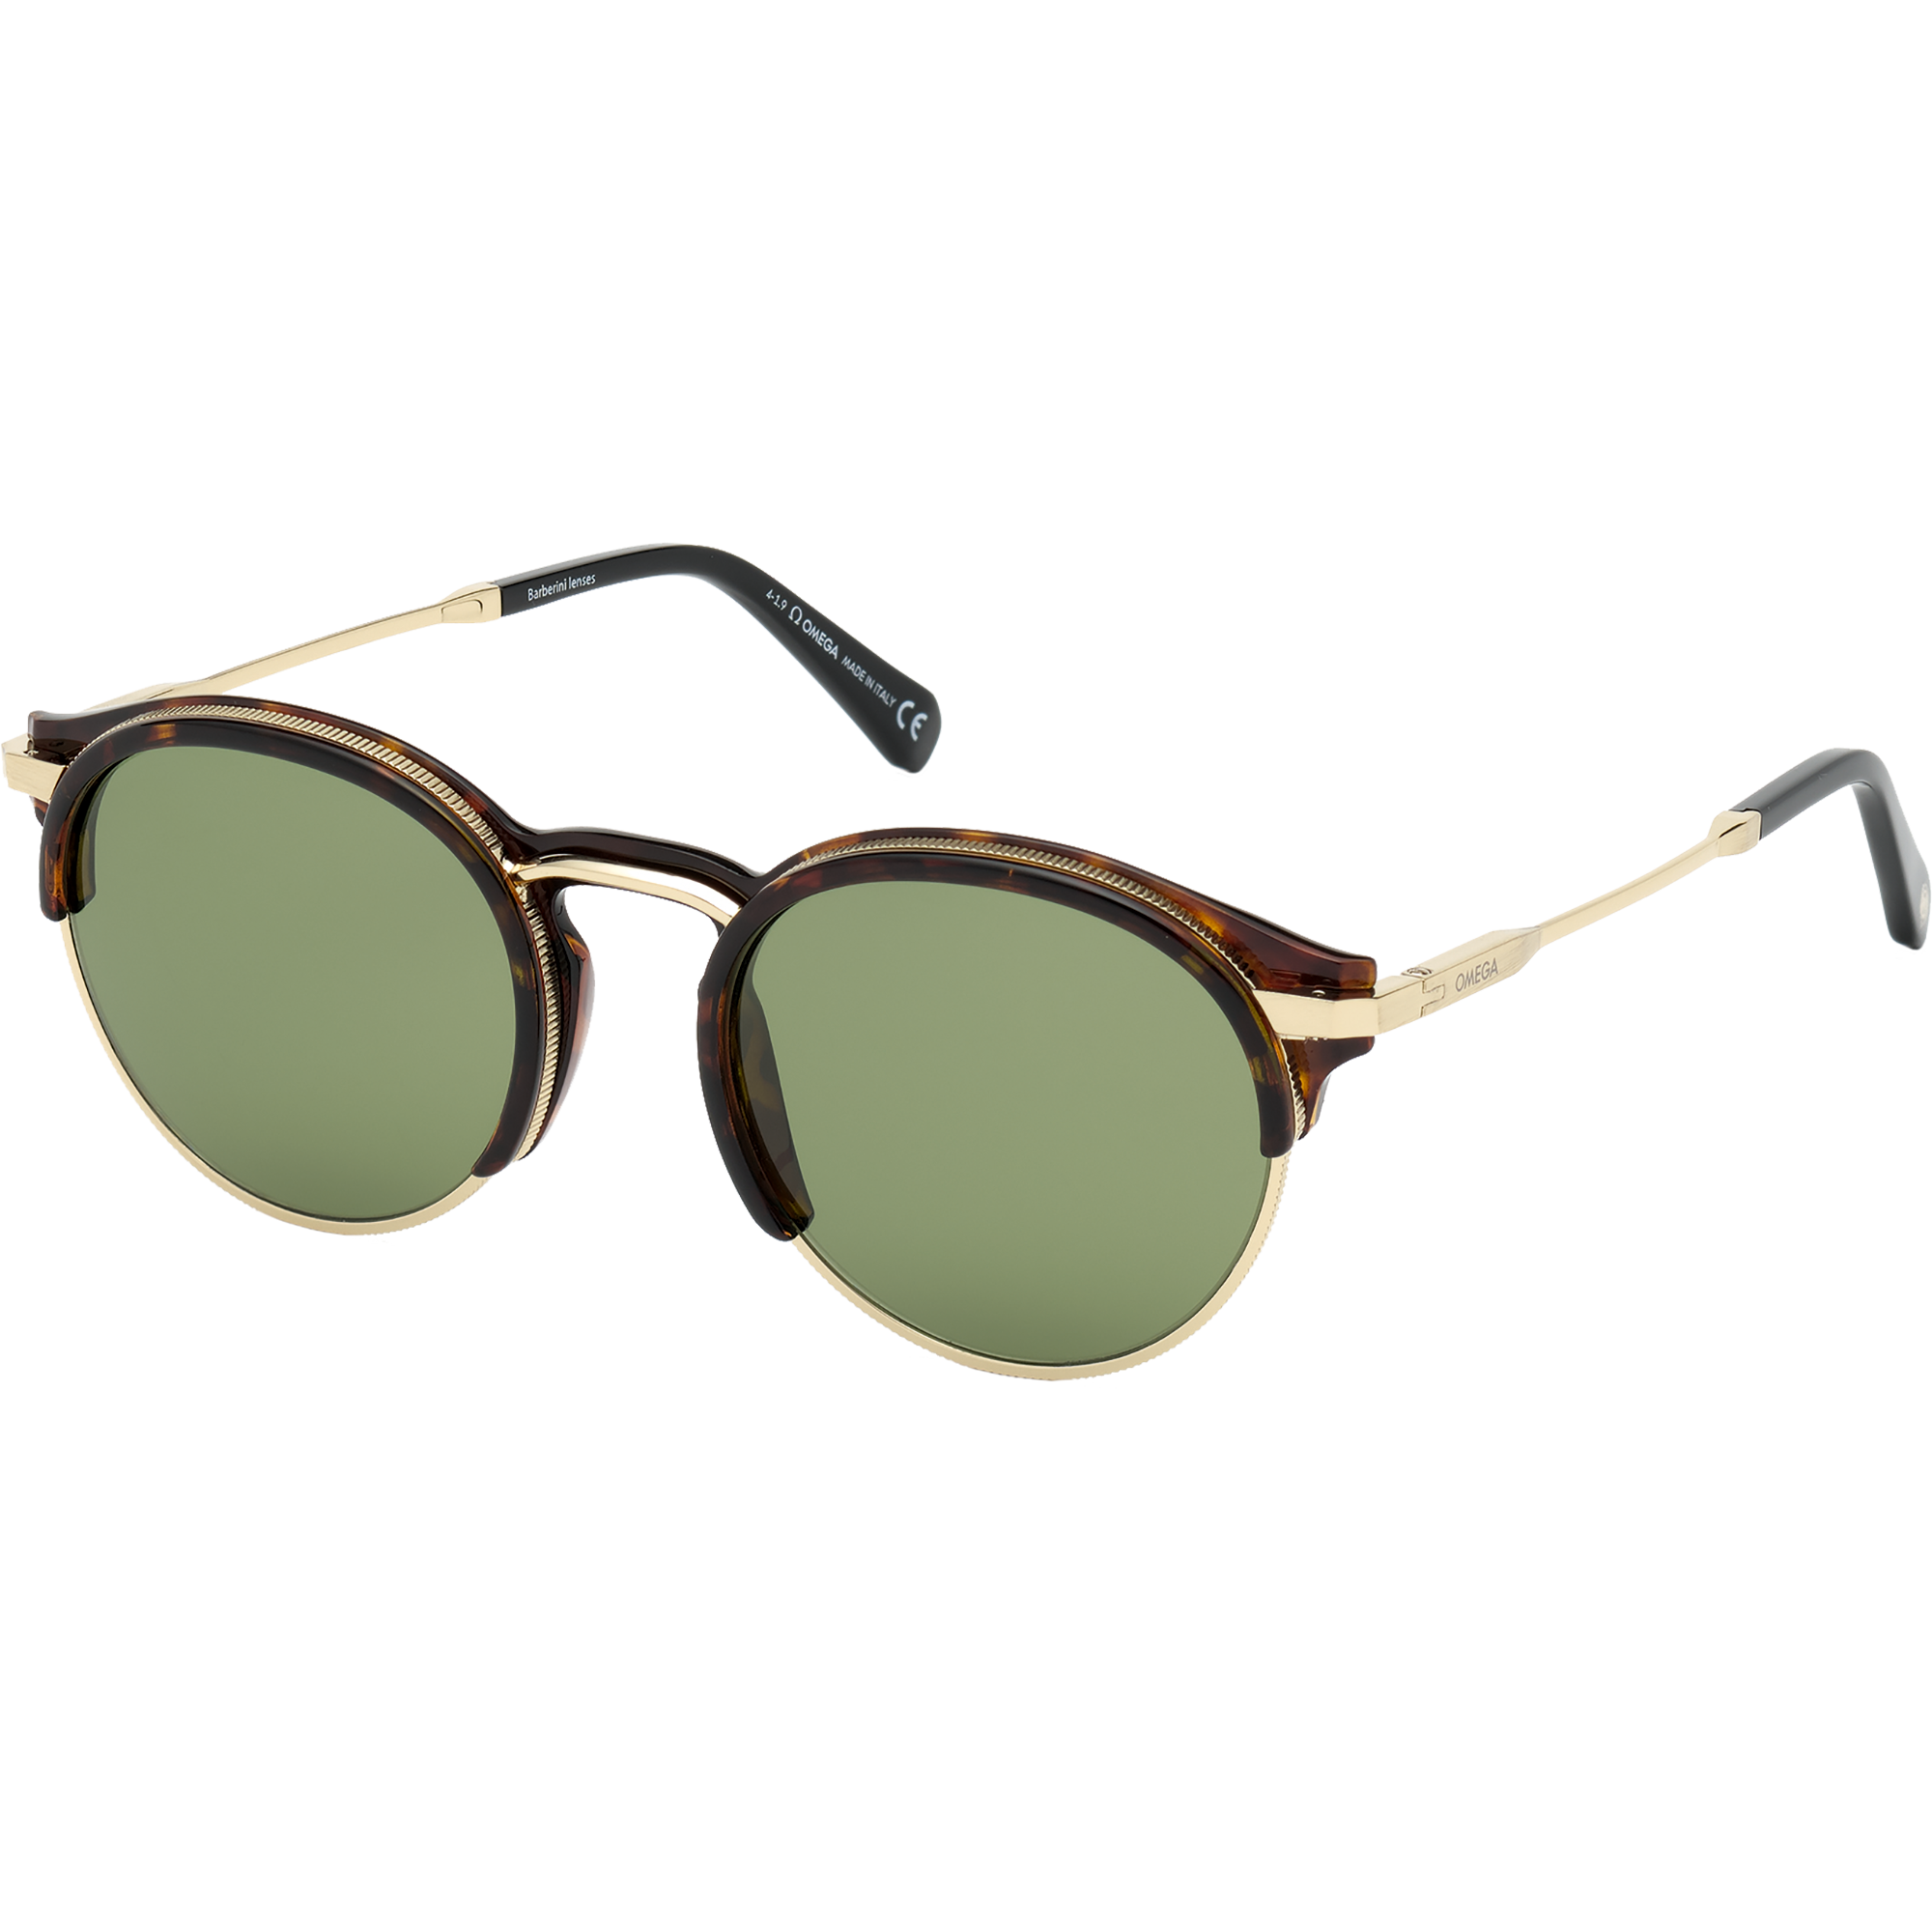 Солнцезащитные очки - Круглая форма, МУЖСКИЕ ОЧКИ - OM0014-H5352N